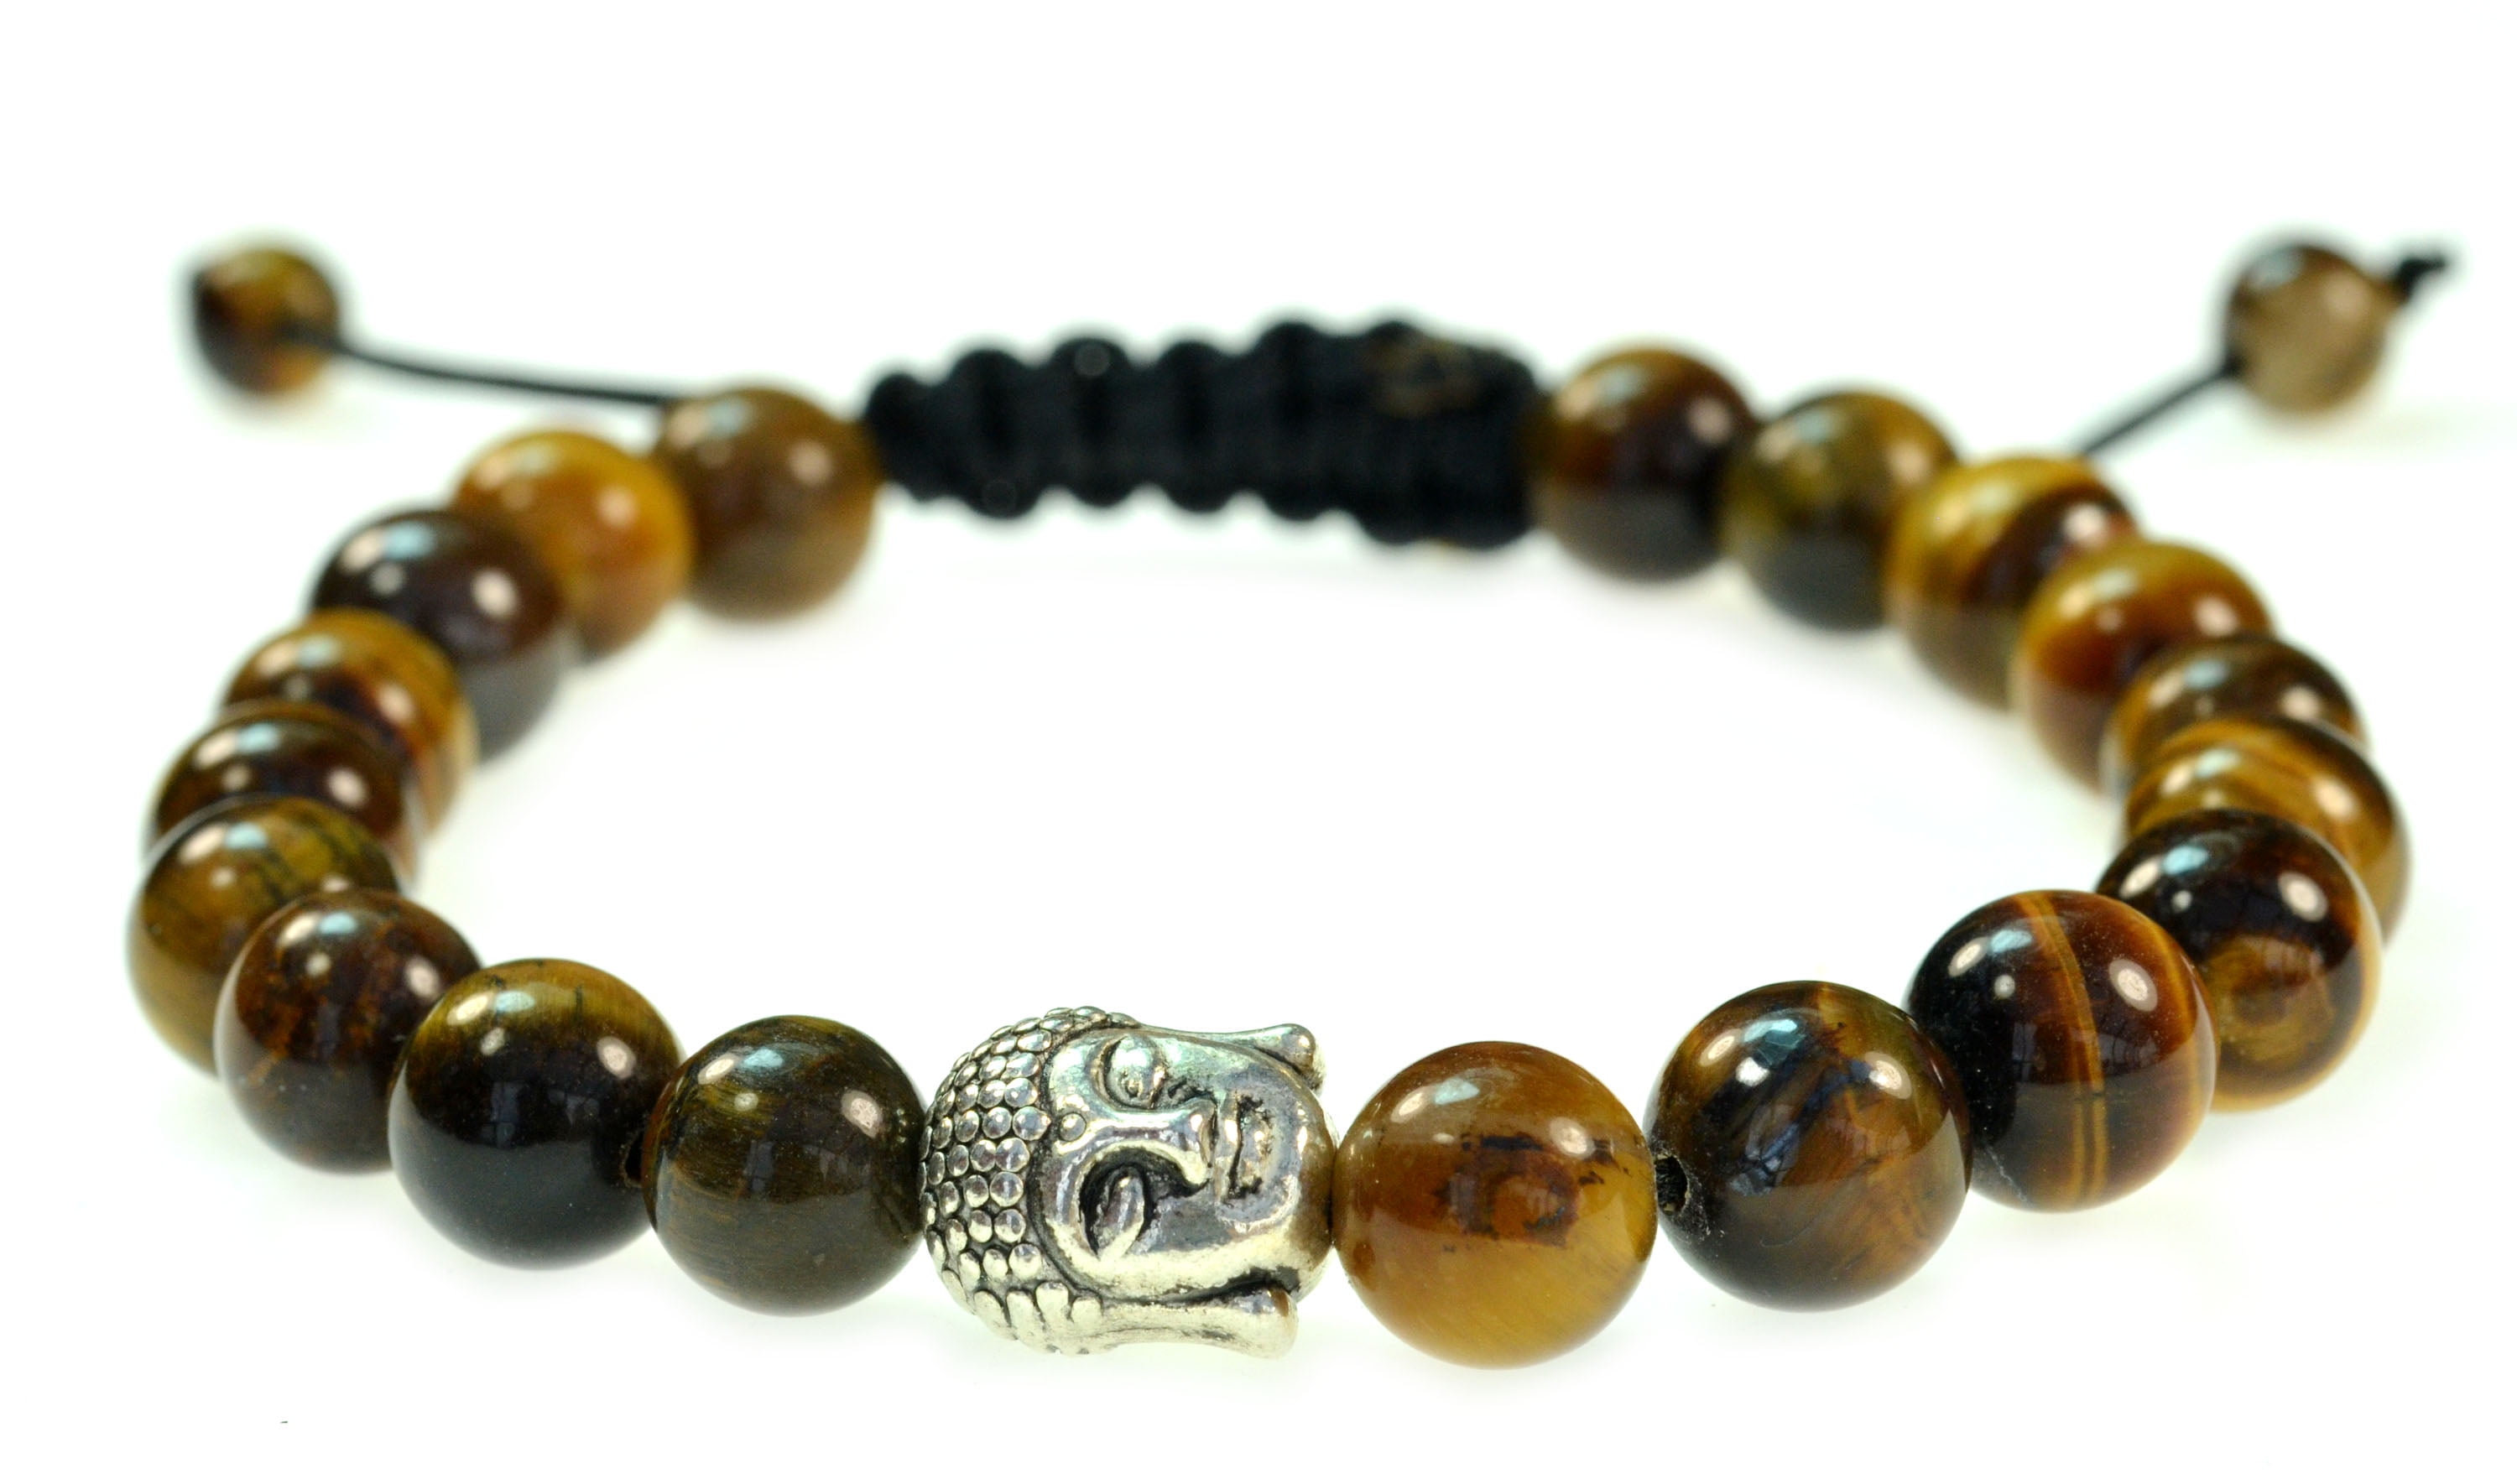 10mm black agate tiger eye stone Gemstone mala bracelet Cuff Chic Yoga Wrist